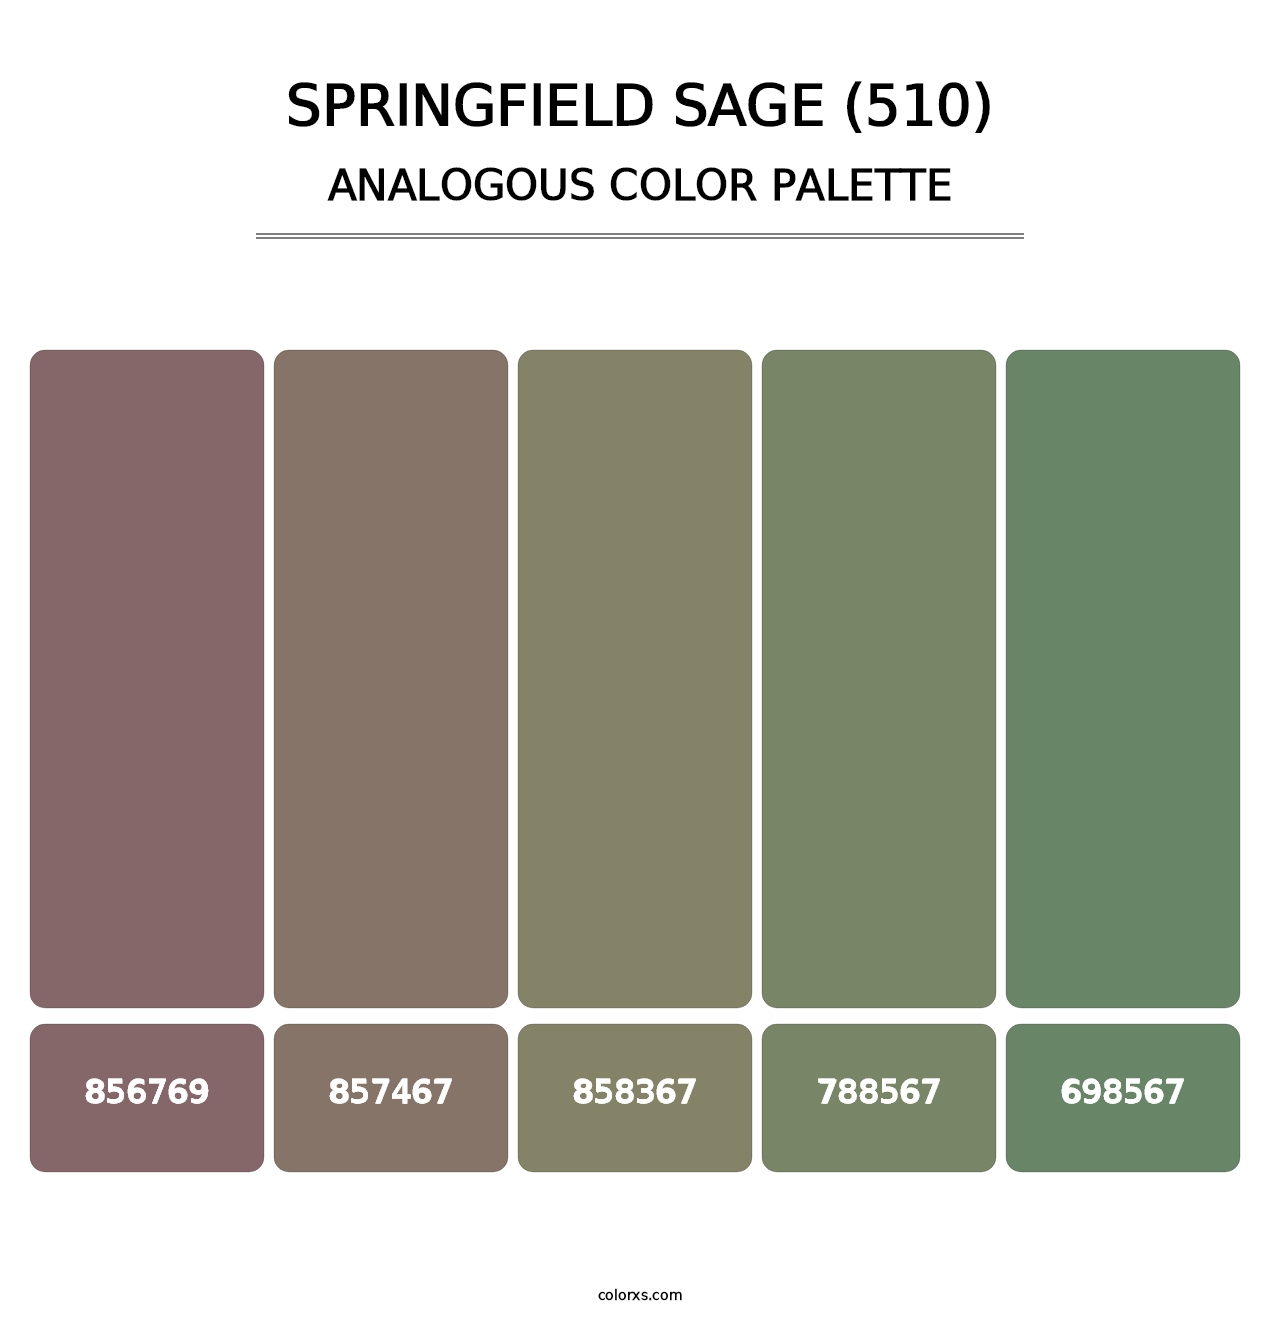 Springfield Sage (510) - Analogous Color Palette